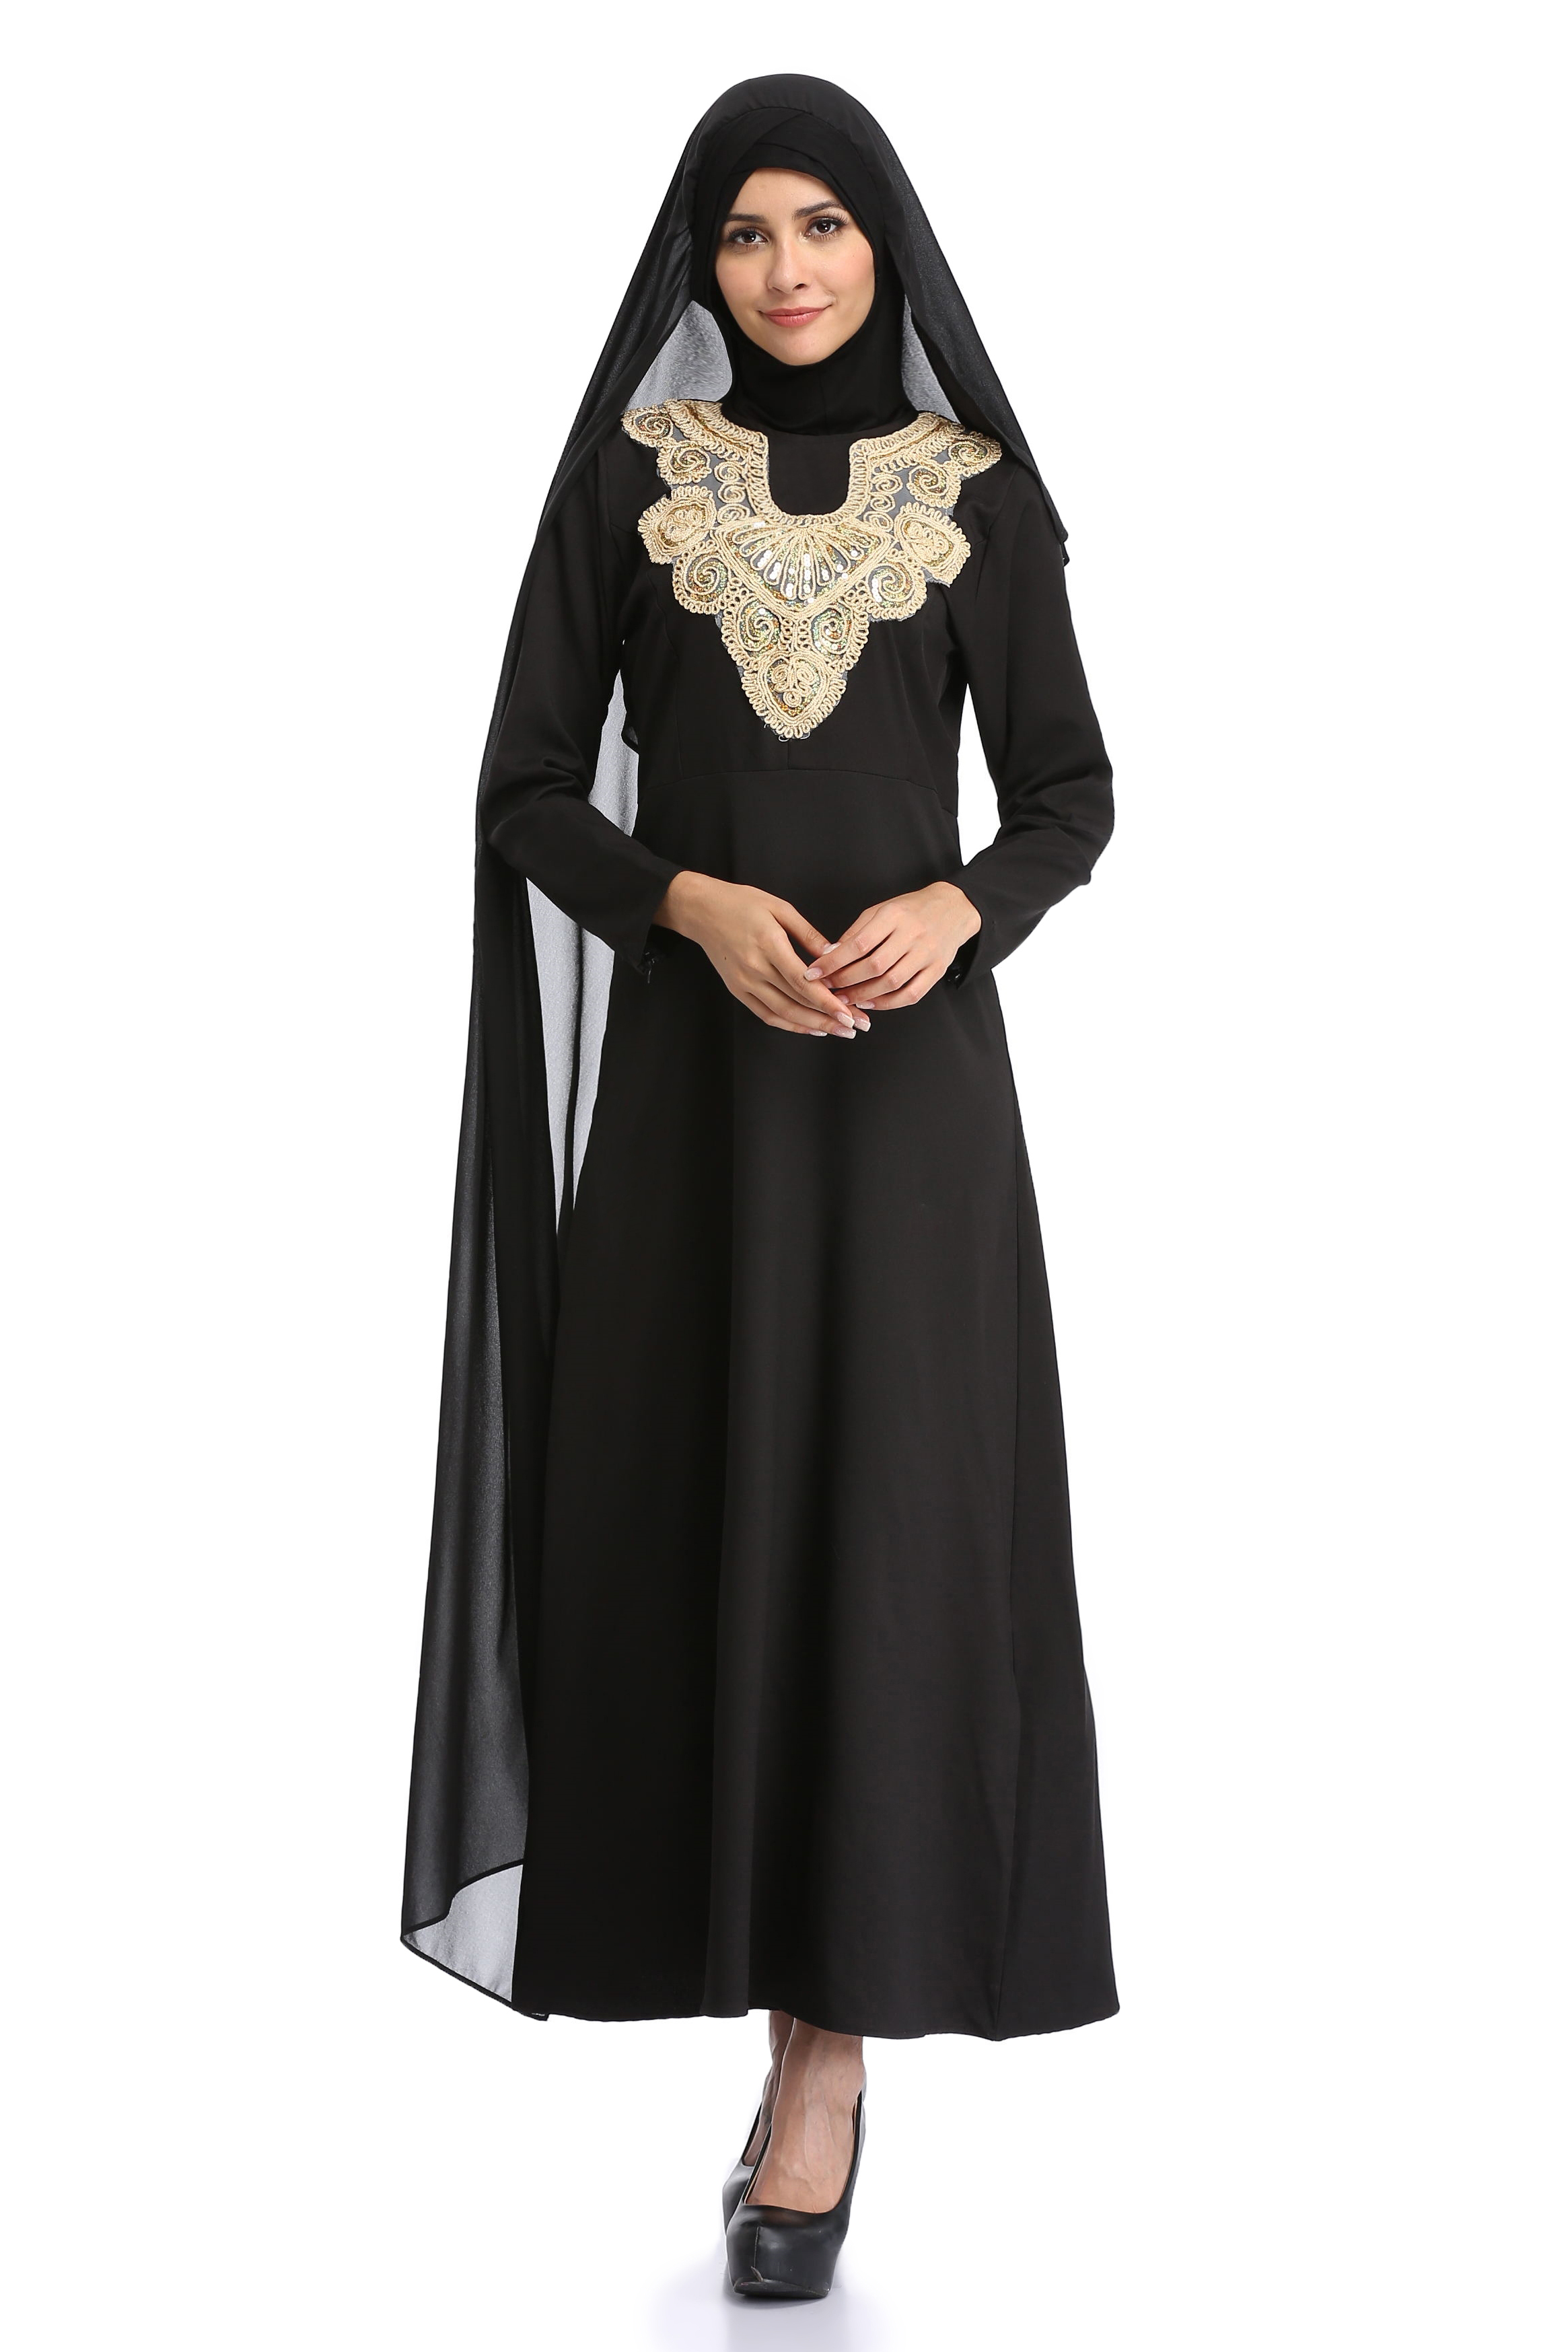 穆斯林女服装民族风回族服装气质淑女大码美衣连衣裙muslim dress